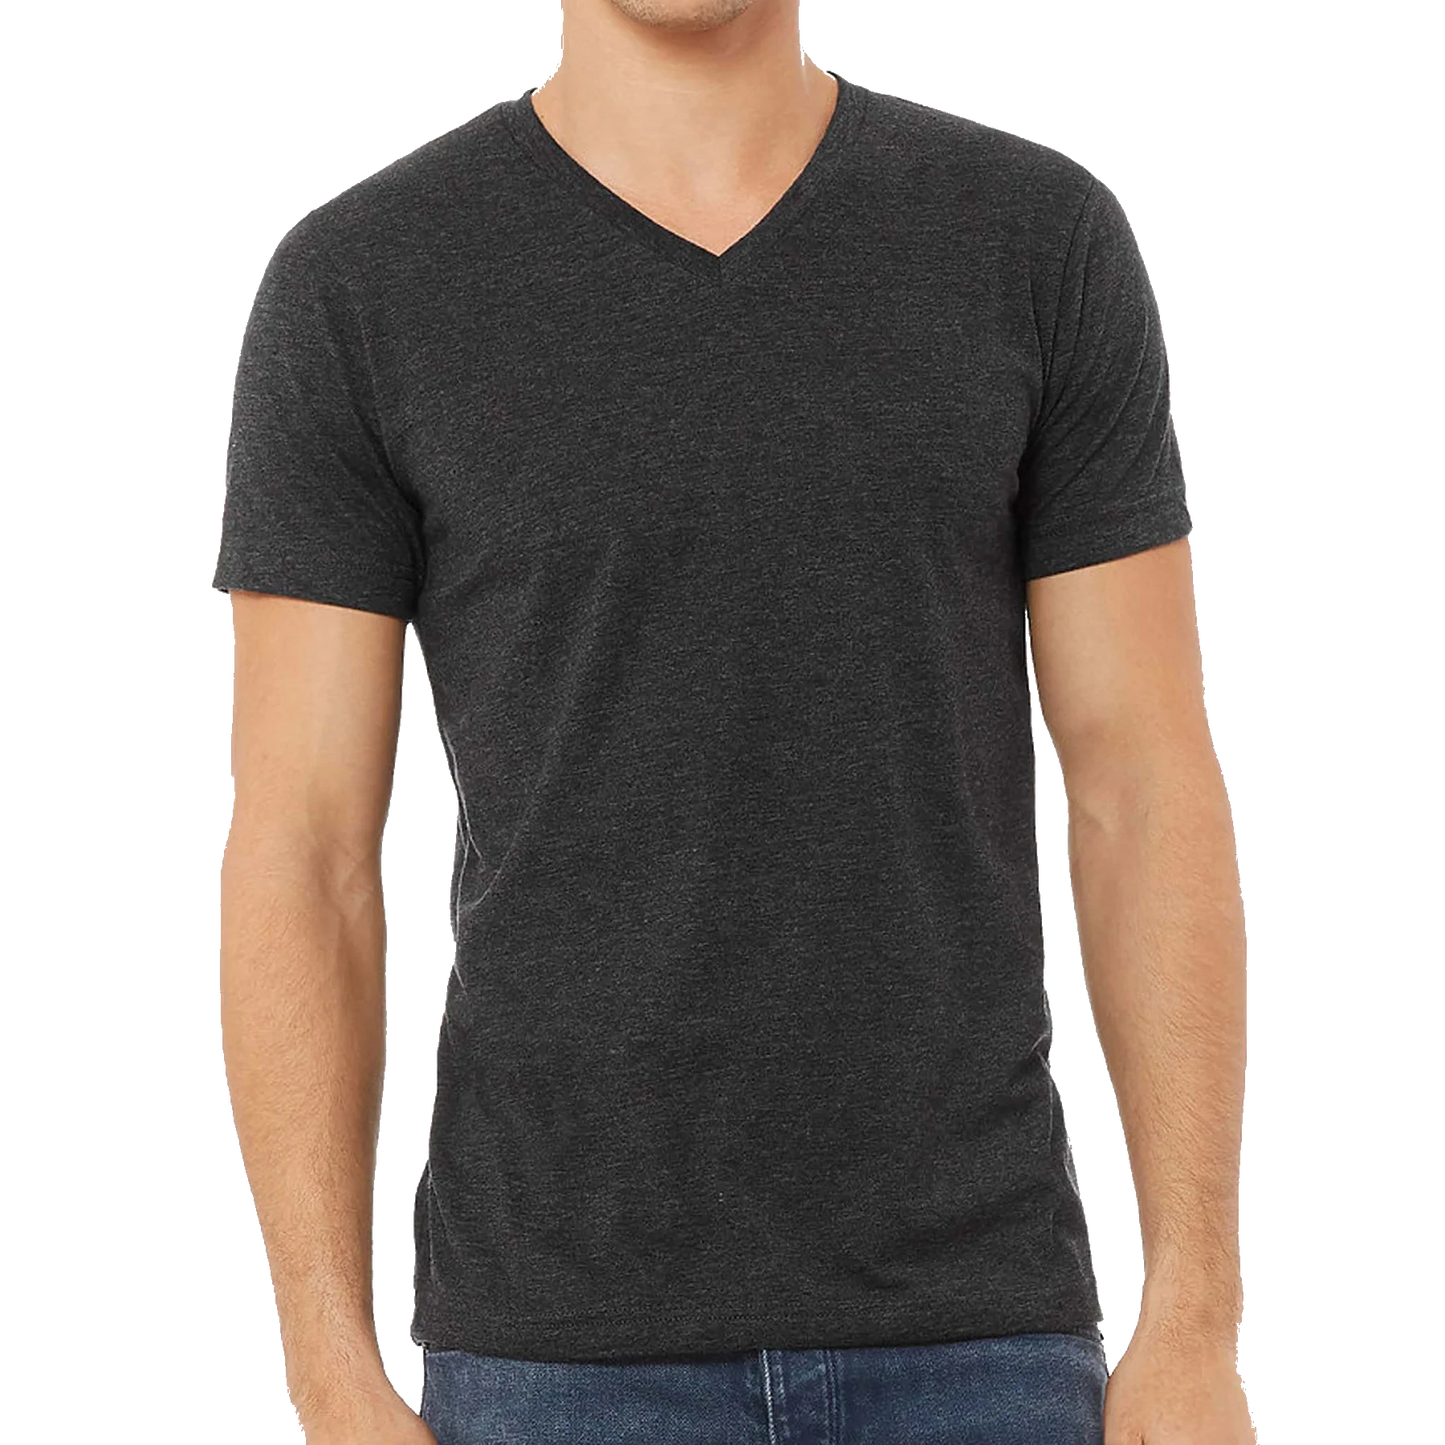 Blank V-Neck T-shirt for Unisex Adult